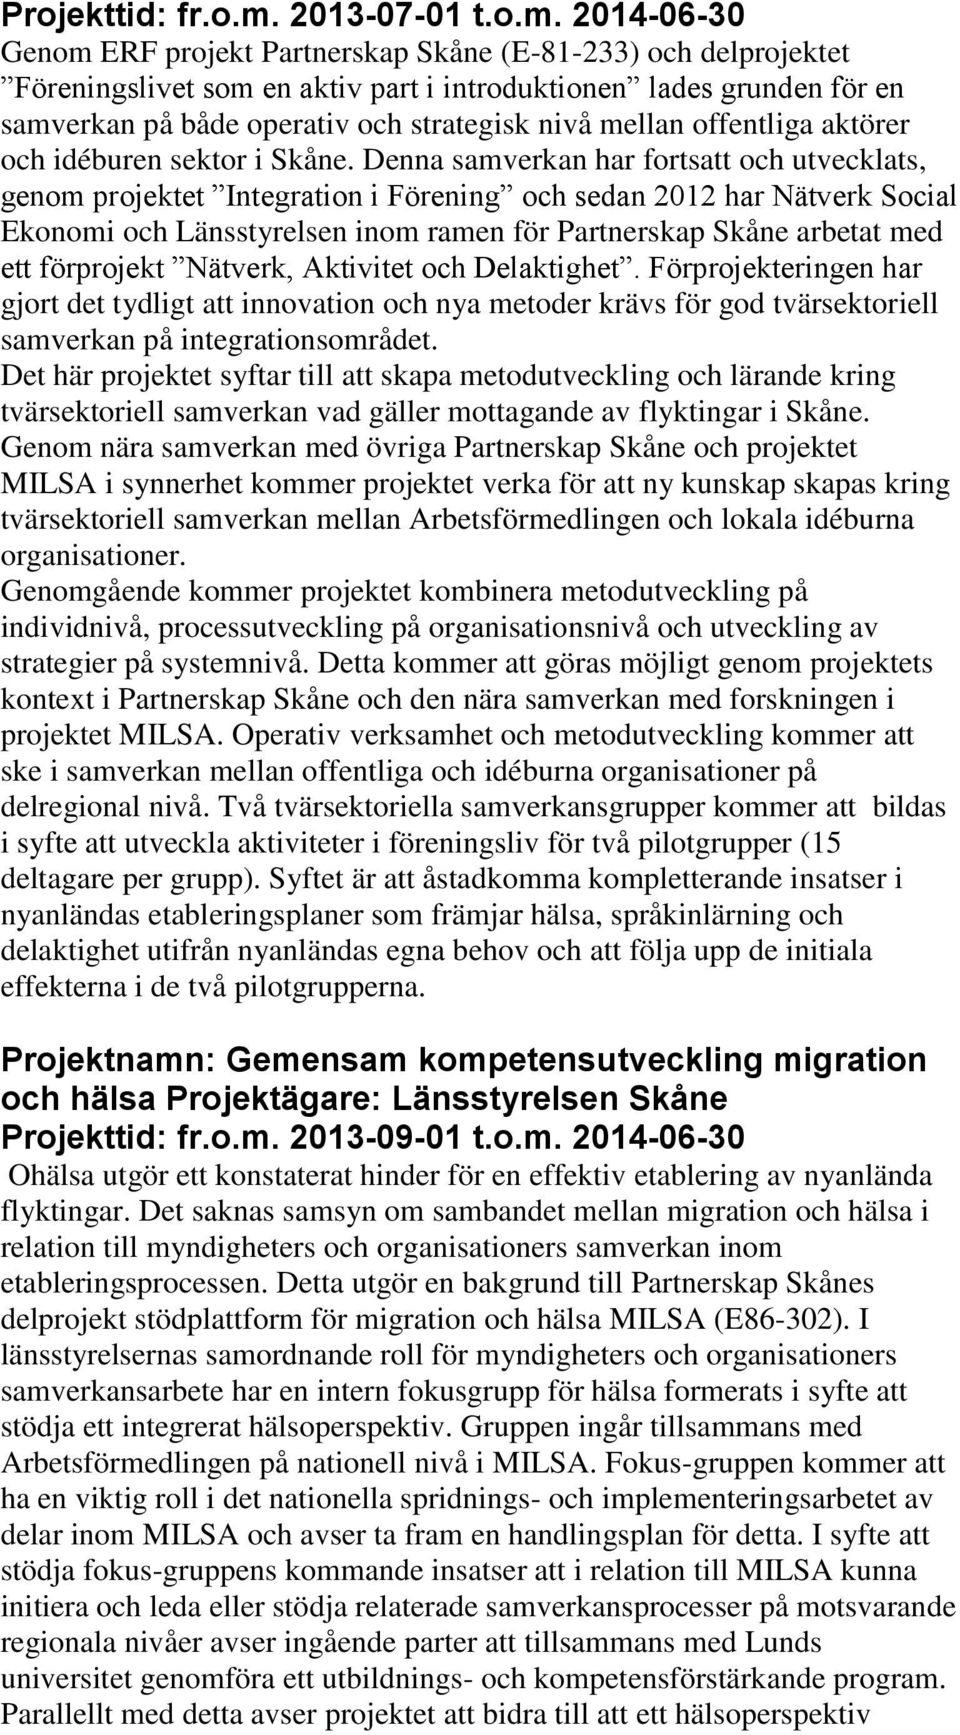 2014-06-30 Genom ERF projekt Partnerskap Skåne (E-81-233) och delprojektet Föreningslivet som en aktiv part i introduktionen lades grunden för en samverkan på både operativ och strategisk nivå mellan